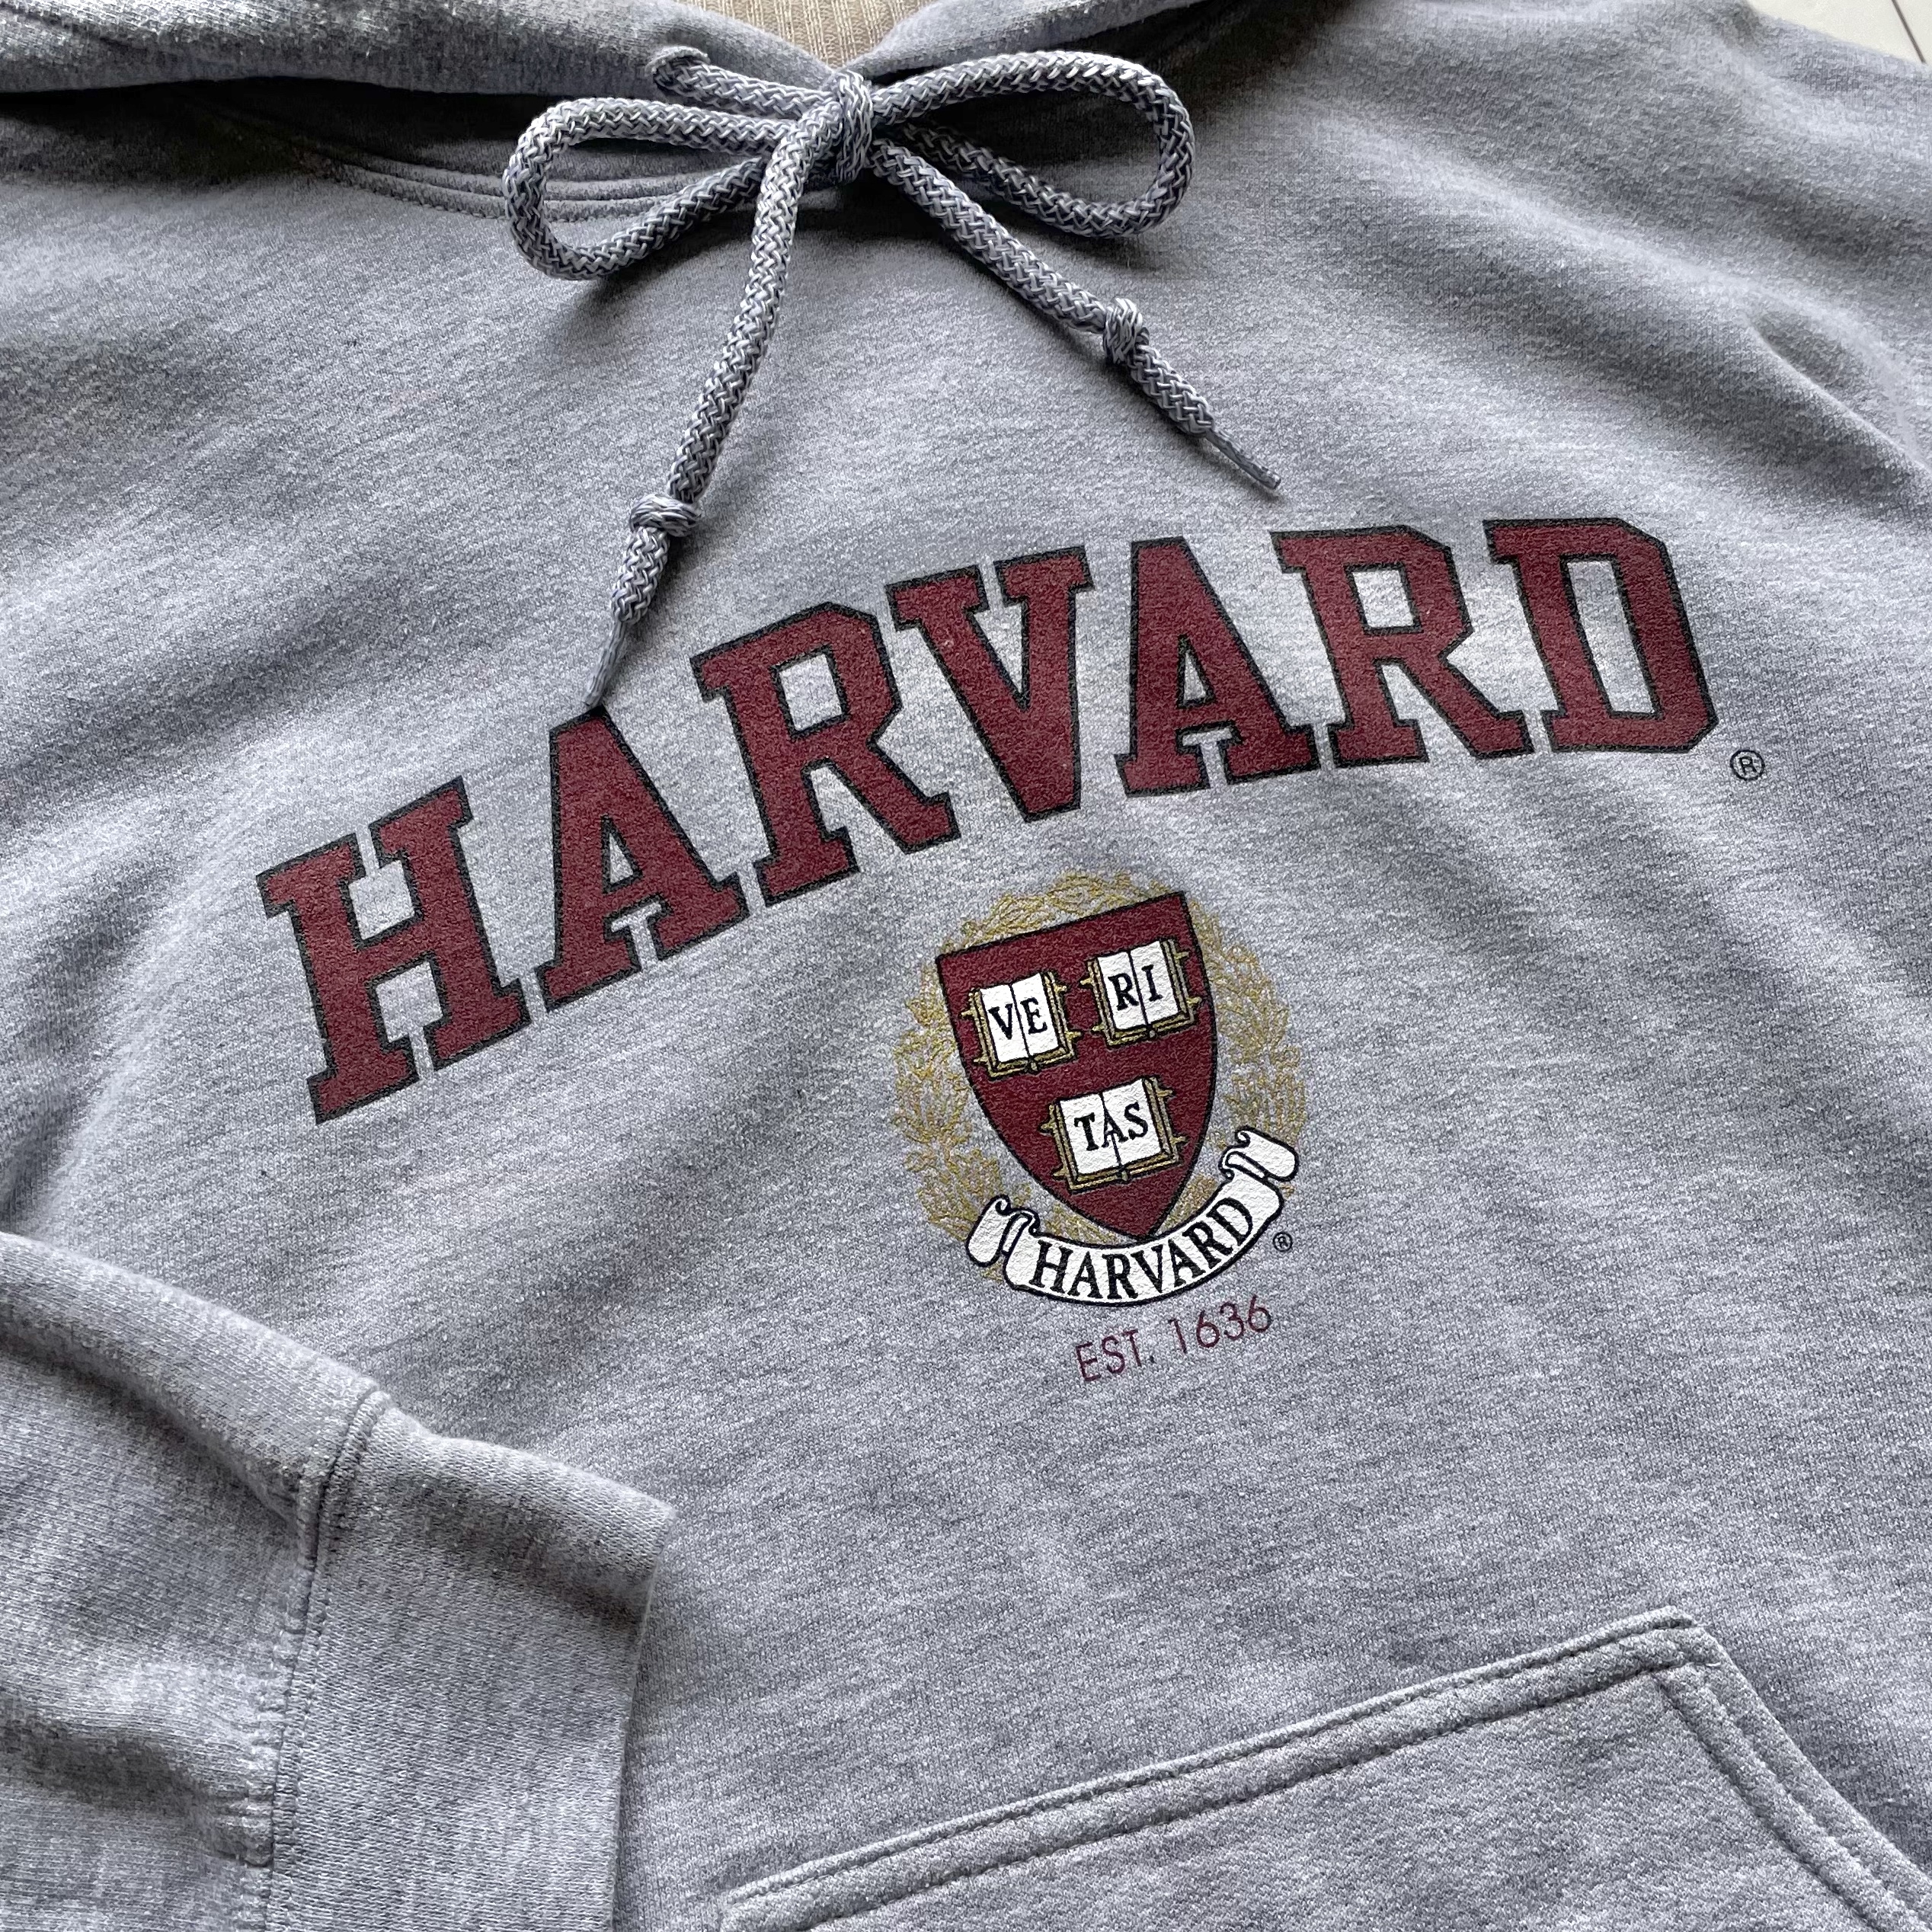 Harvard University college hoodie